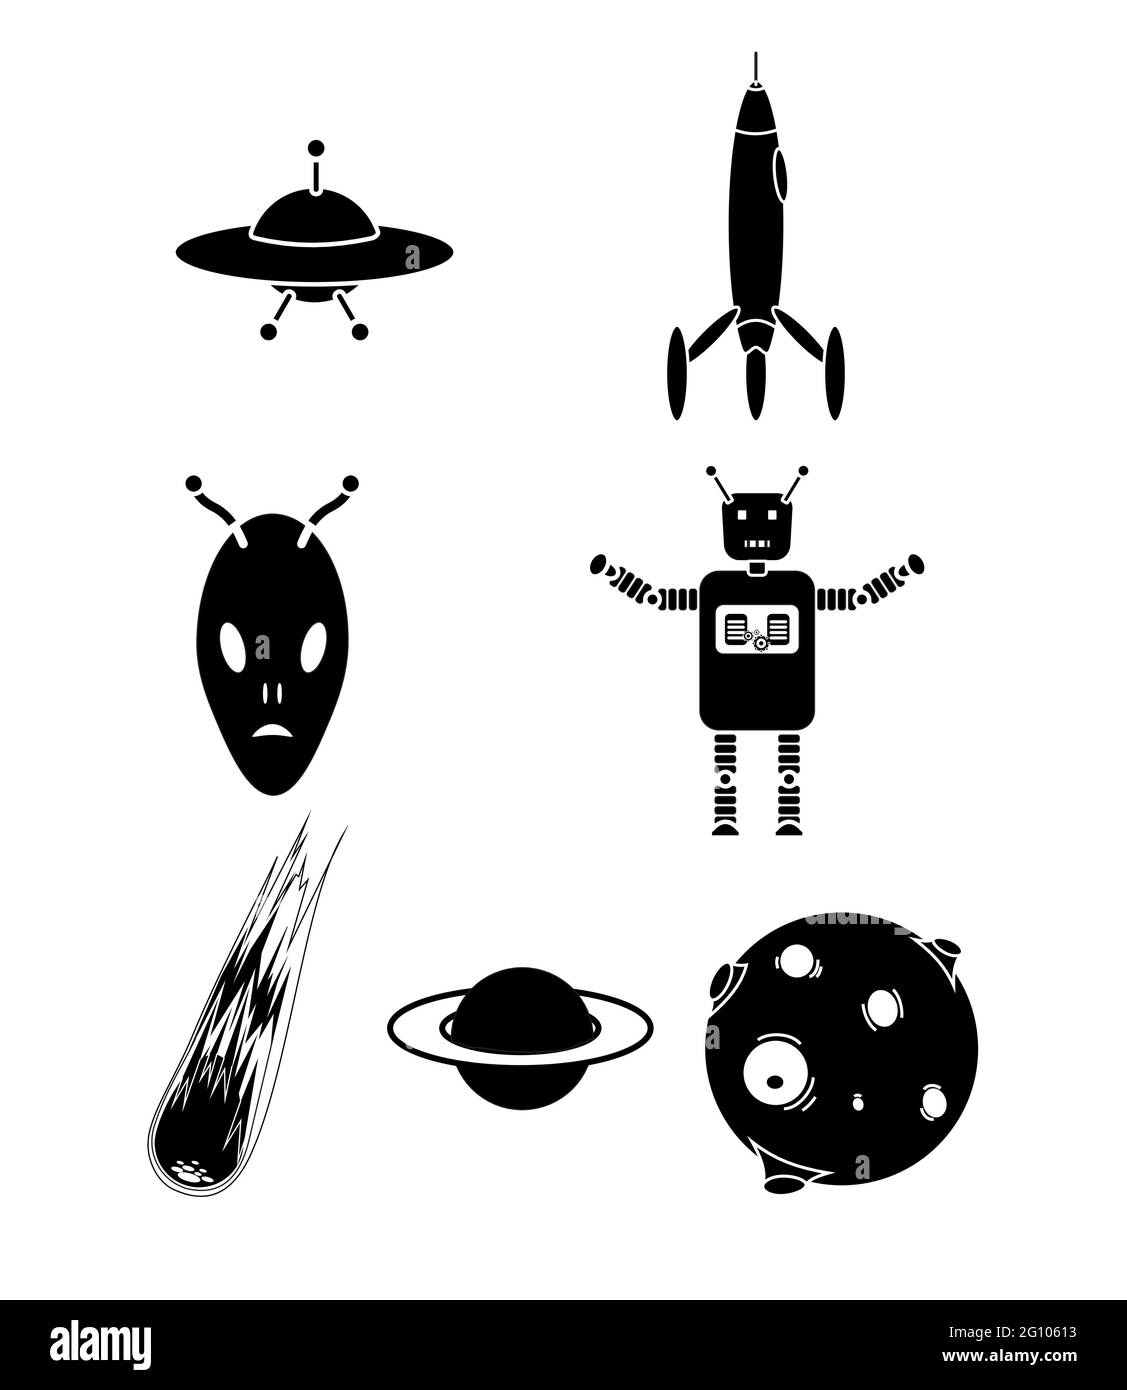 Des figures de science-fiction, un extraterrestre, une fusée, un robot de la lune et un météore Illustration de Vecteur